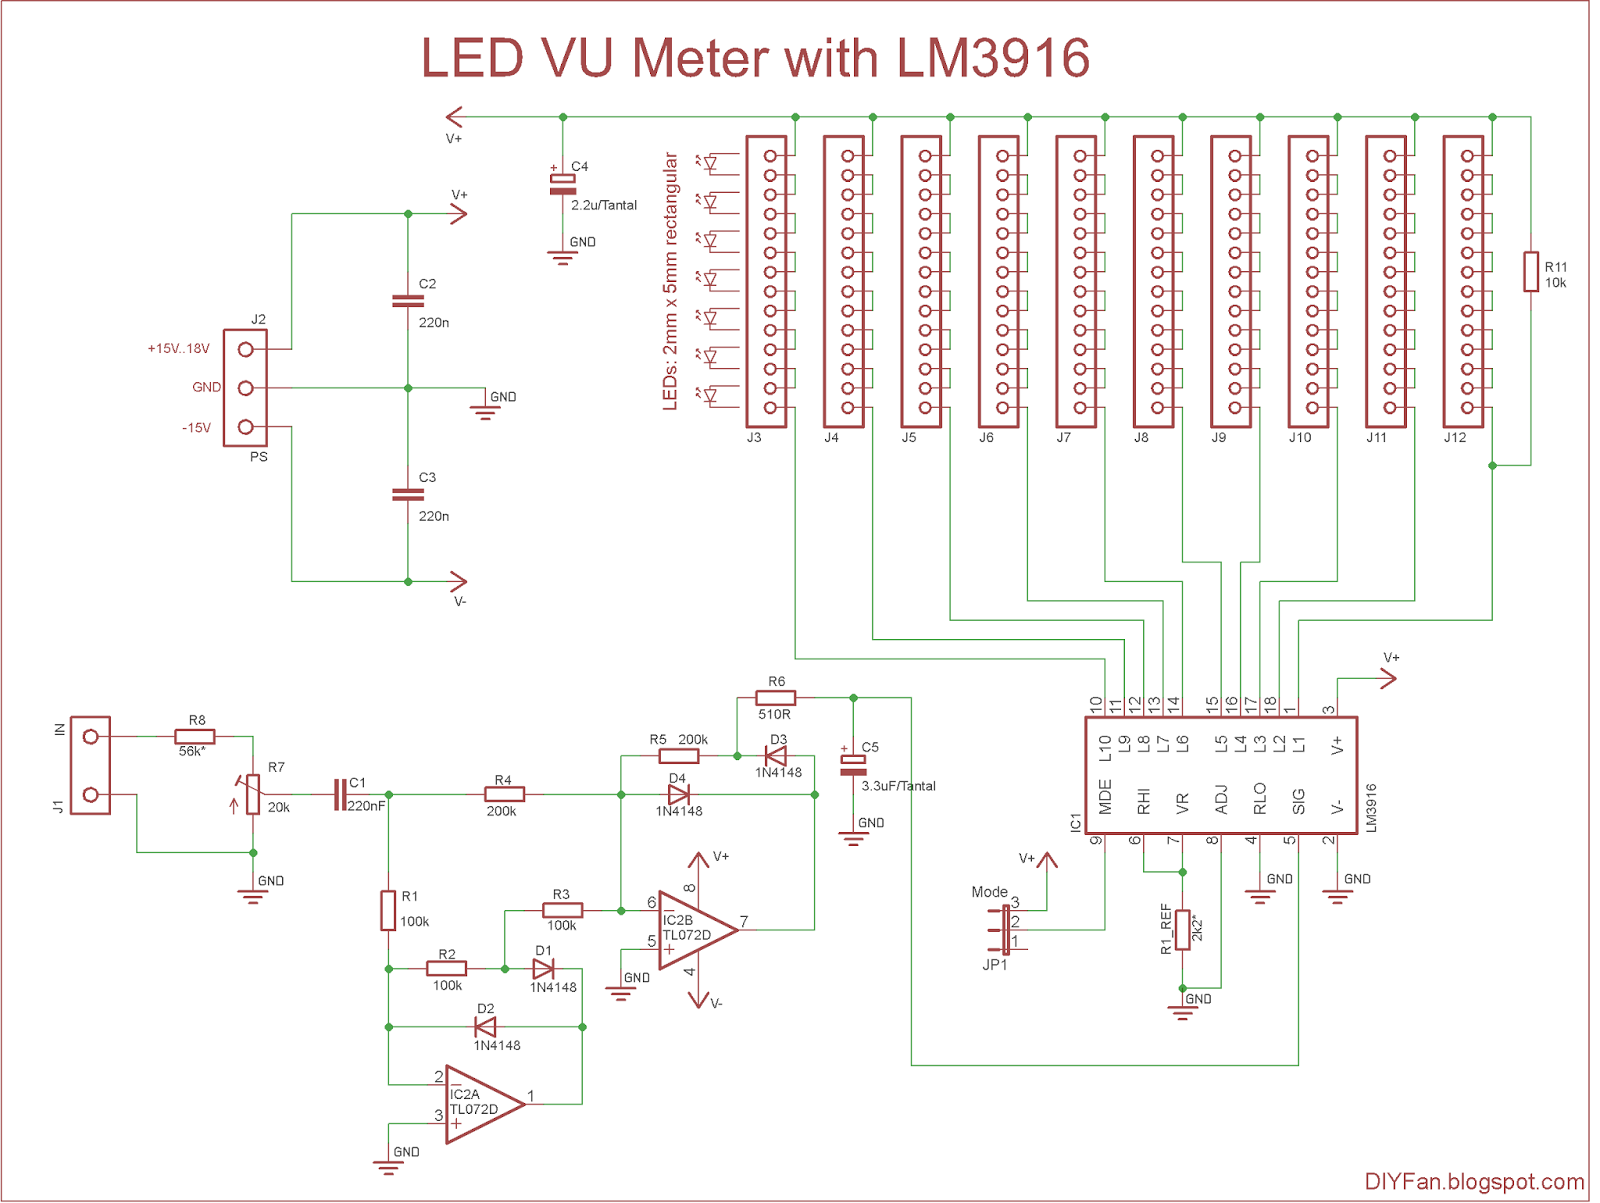 Meters schematics vu LED VU